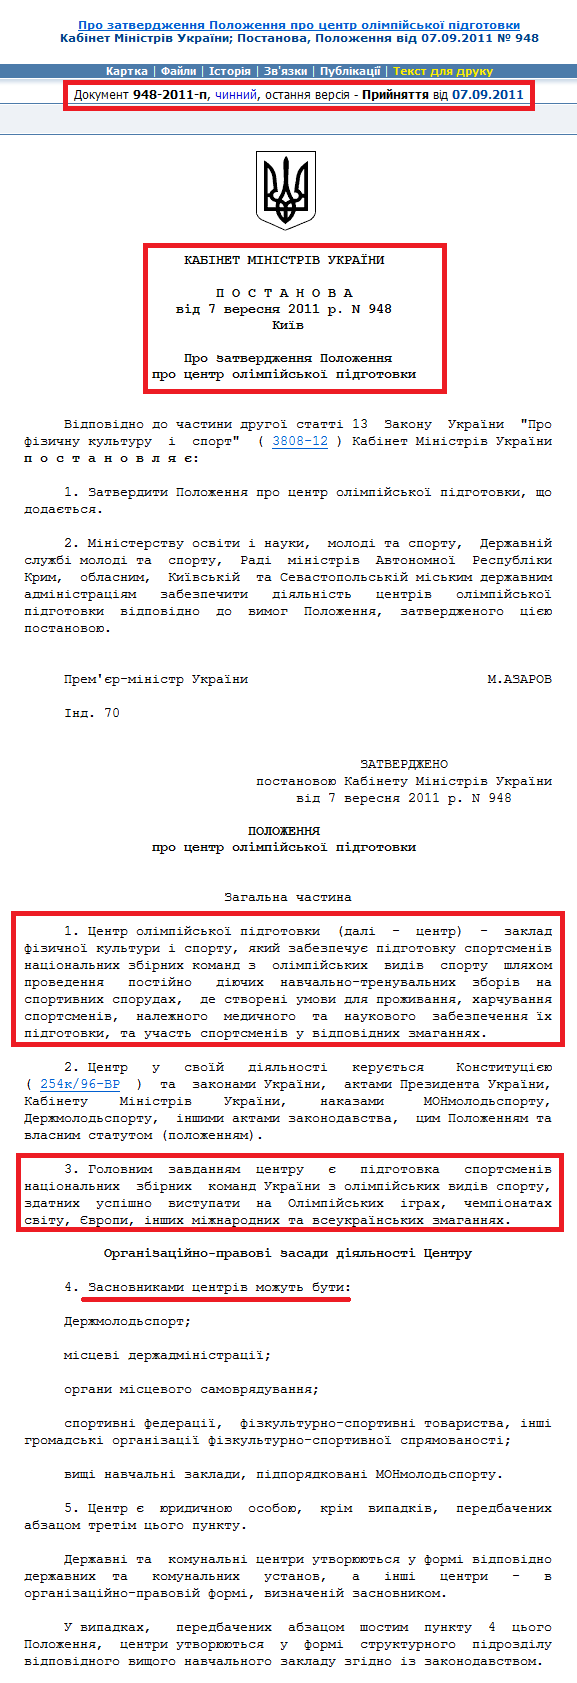 http://zakon2.rada.gov.ua/laws/show/948-2011-%D0%BF